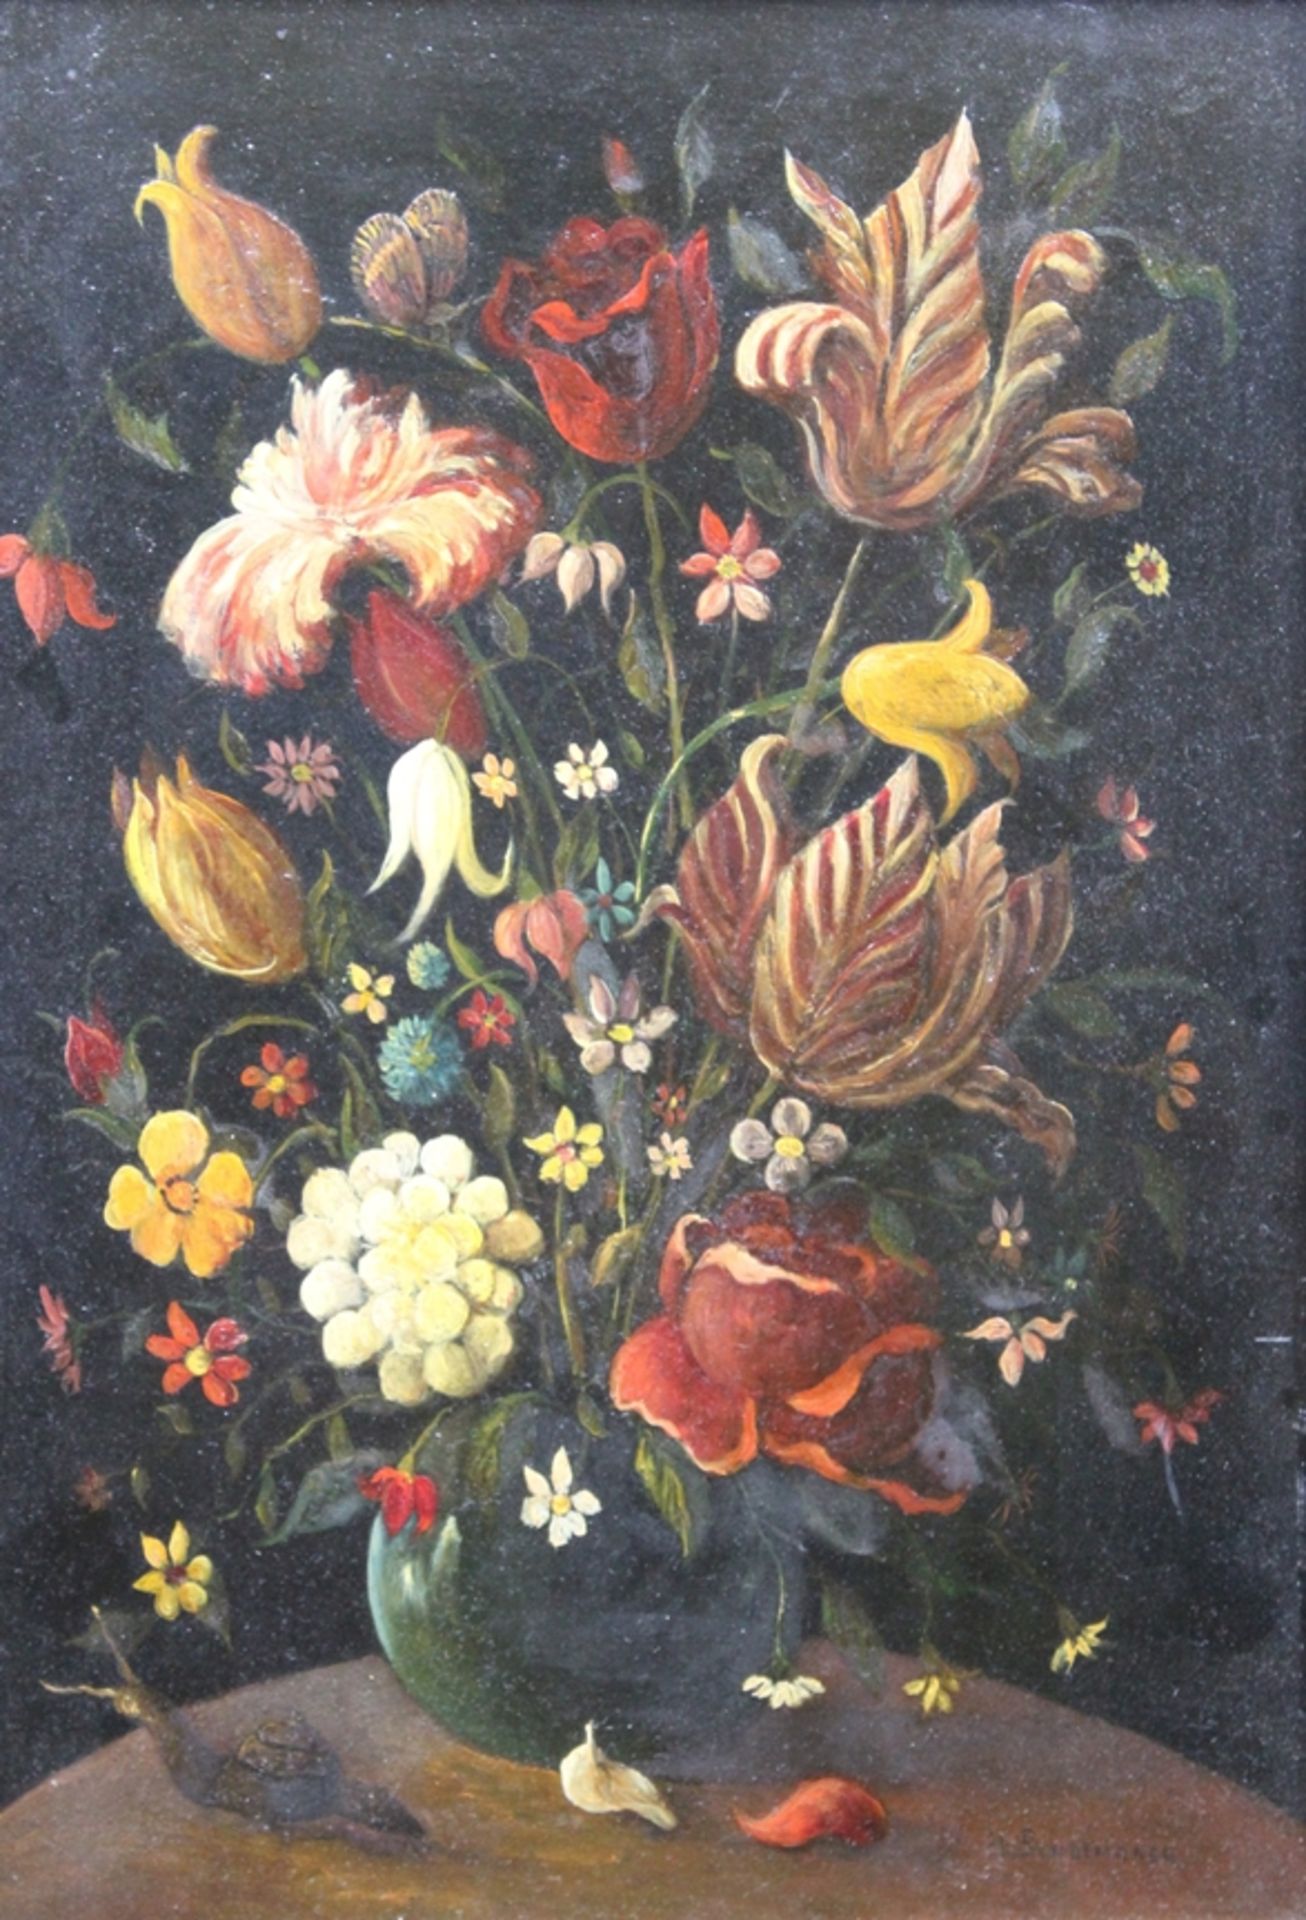 Holländische Schule, Anhänger von Ambrosius Bosschaert, 17. Jhd., Blumen in Vase, Apokryph unten re - Bild 3 aus 5